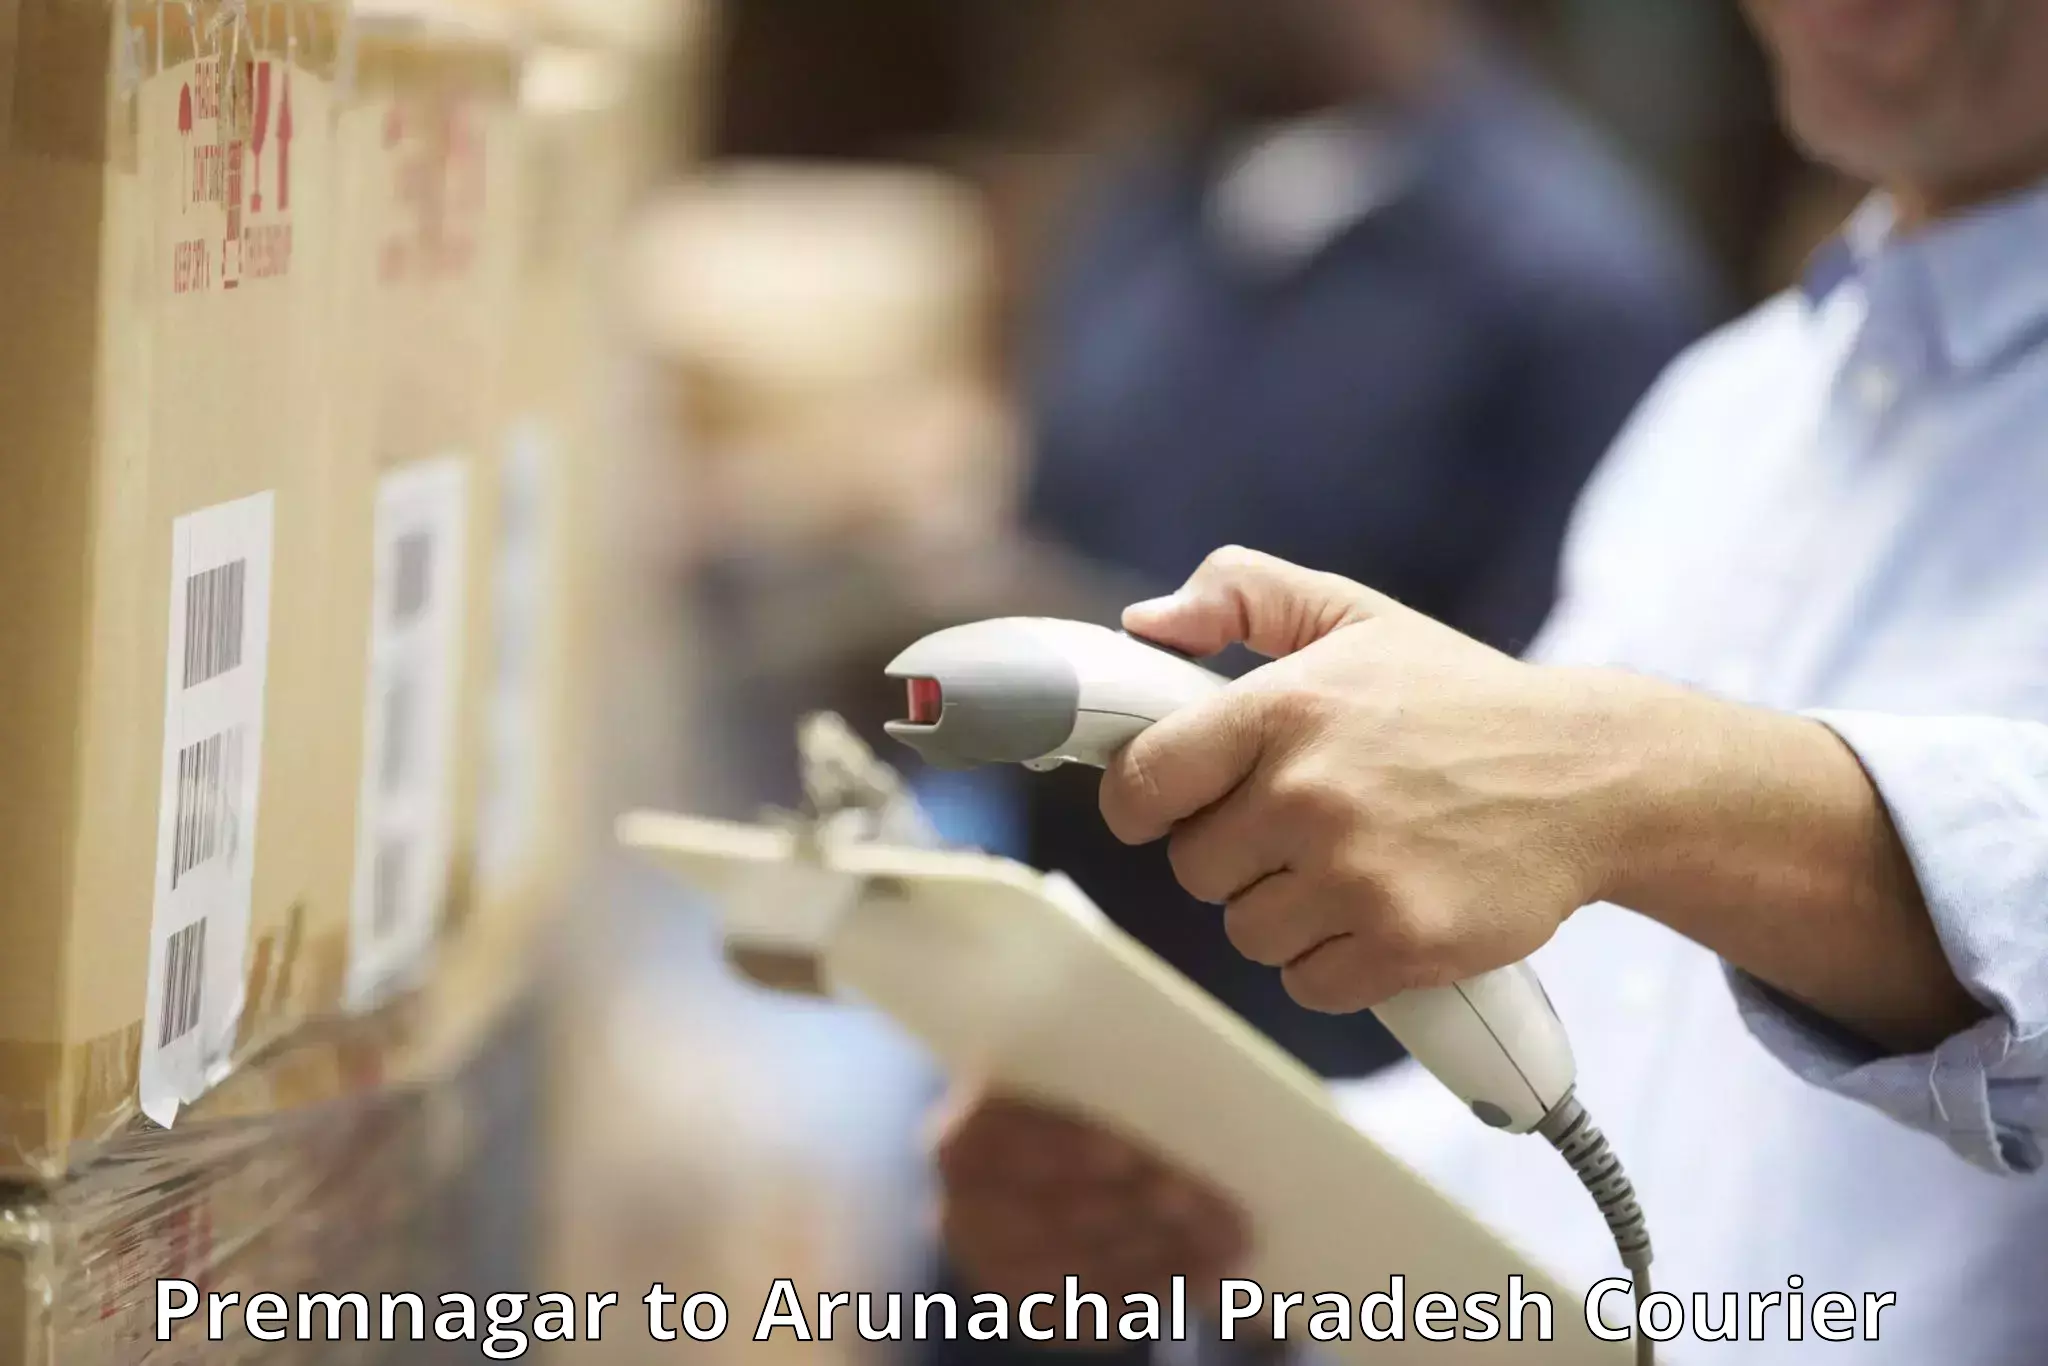 Baggage relocation service Premnagar to Arunachal Pradesh